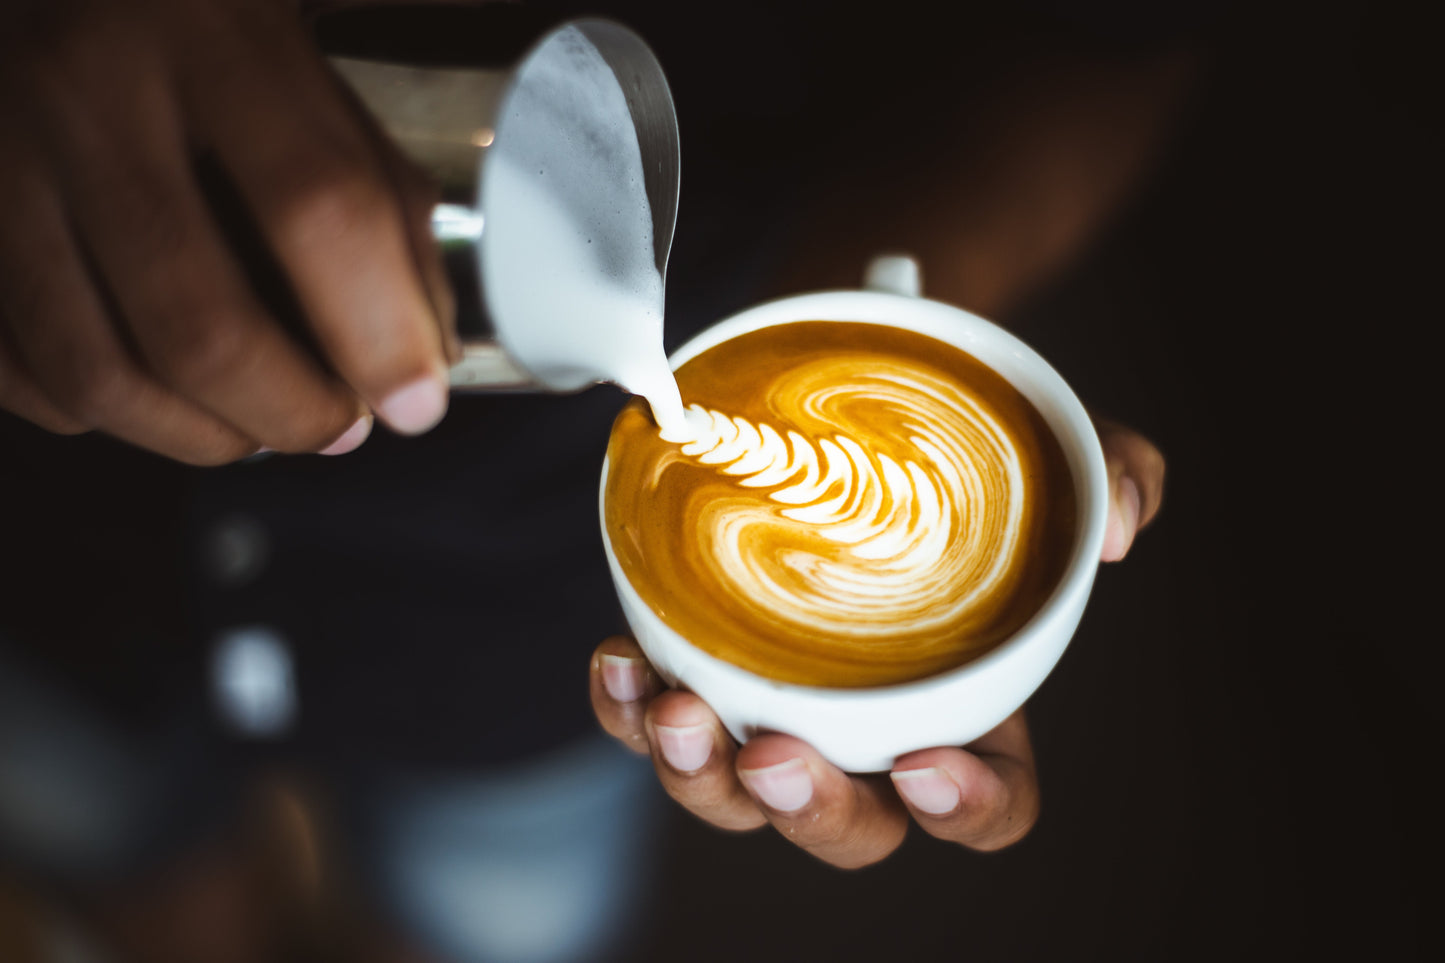 Eine Person gießt geschäumte Milch aus einem silbernen Kännchen in eine Tasse mit Kaffee, um Latte Art zu erstellen. Die Latte Art zeigt ein elegantes, federförmiges Muster auf der Oberfläche des Kaffees.